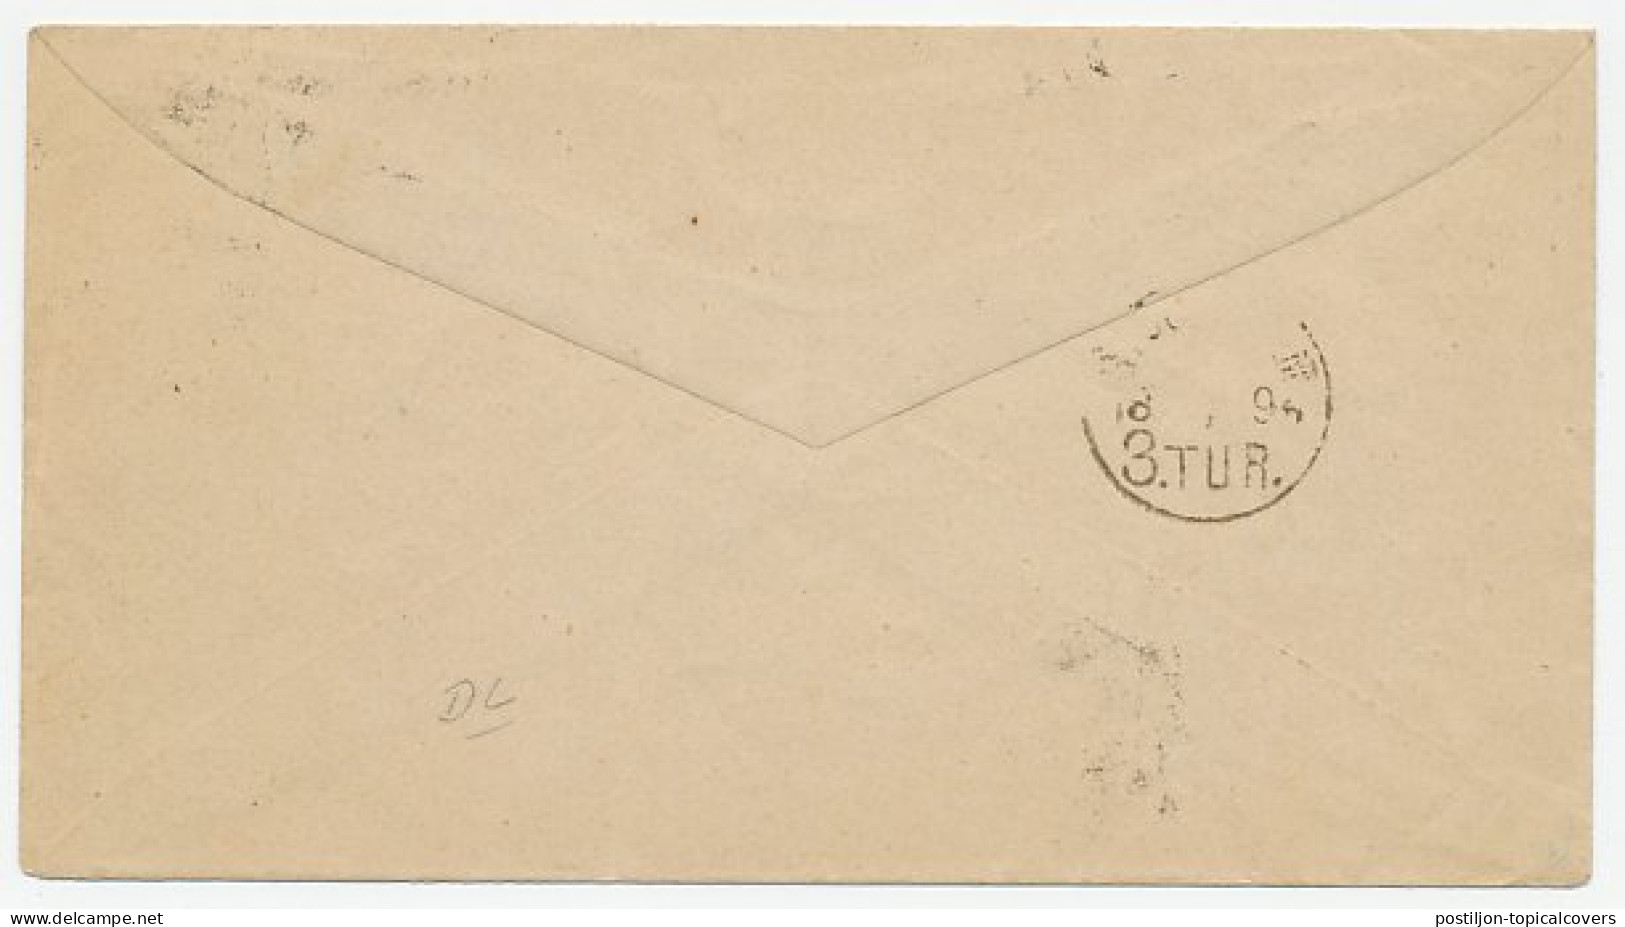 Envelop G. 5 / Bijfrankering Deventer - Zweden 1894 - Postal Stationery